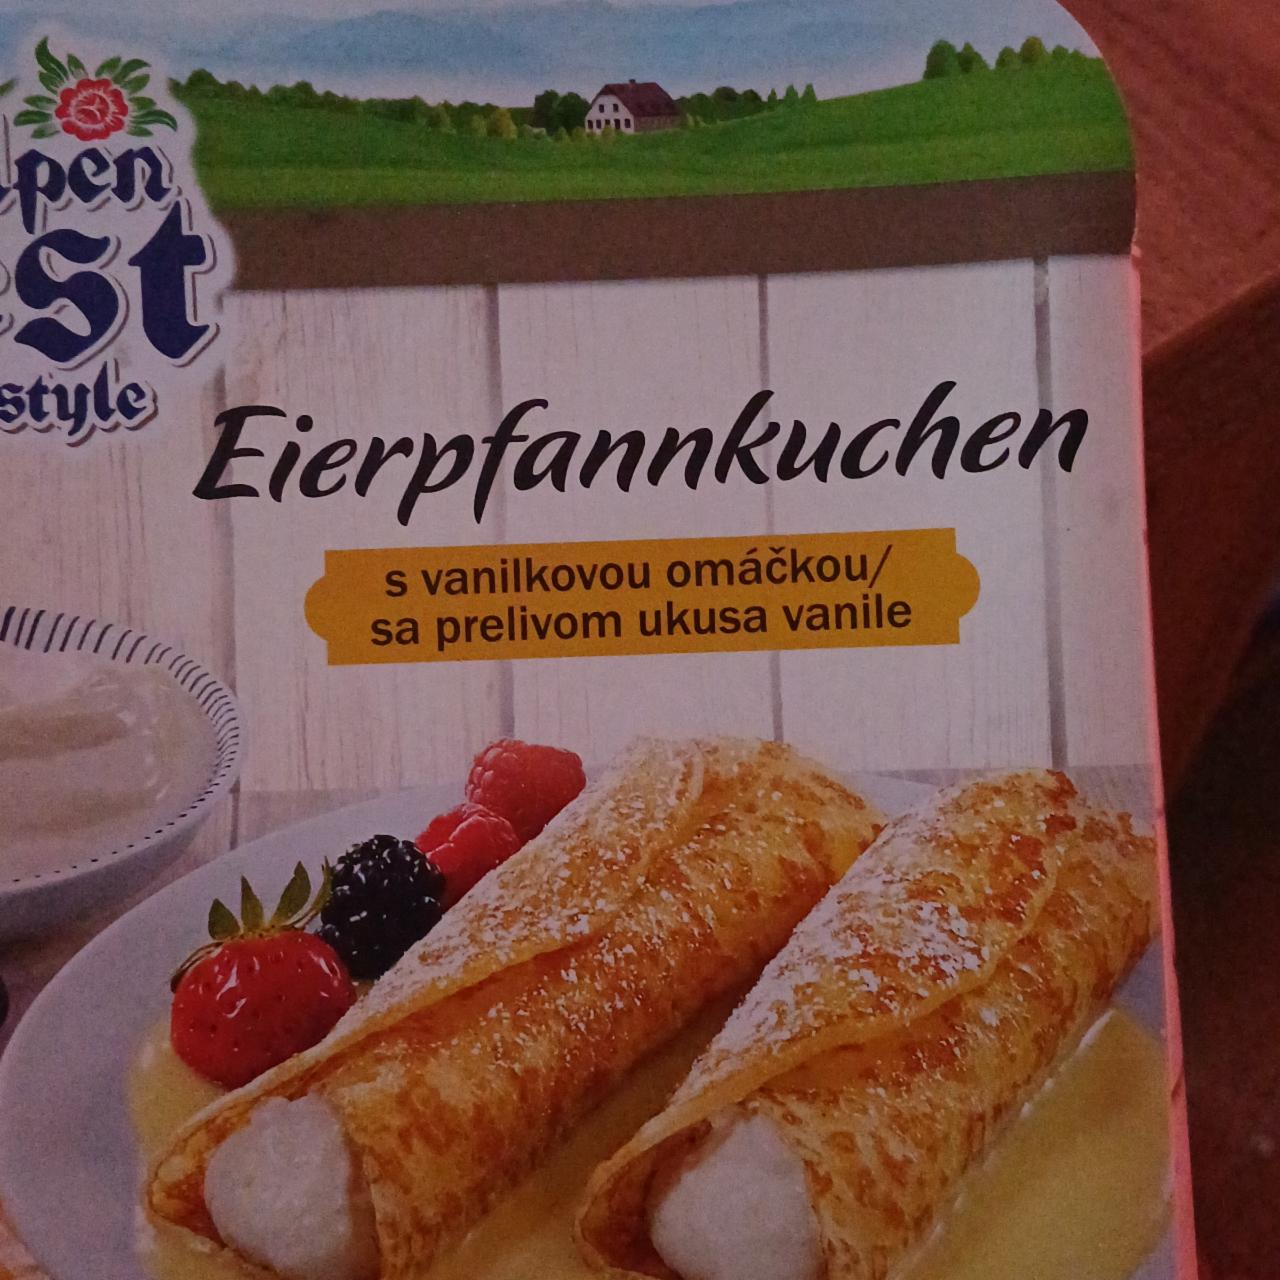 Fotografie - Eierpfannkuchen s vanilkovou omáčkou Alpen fest style